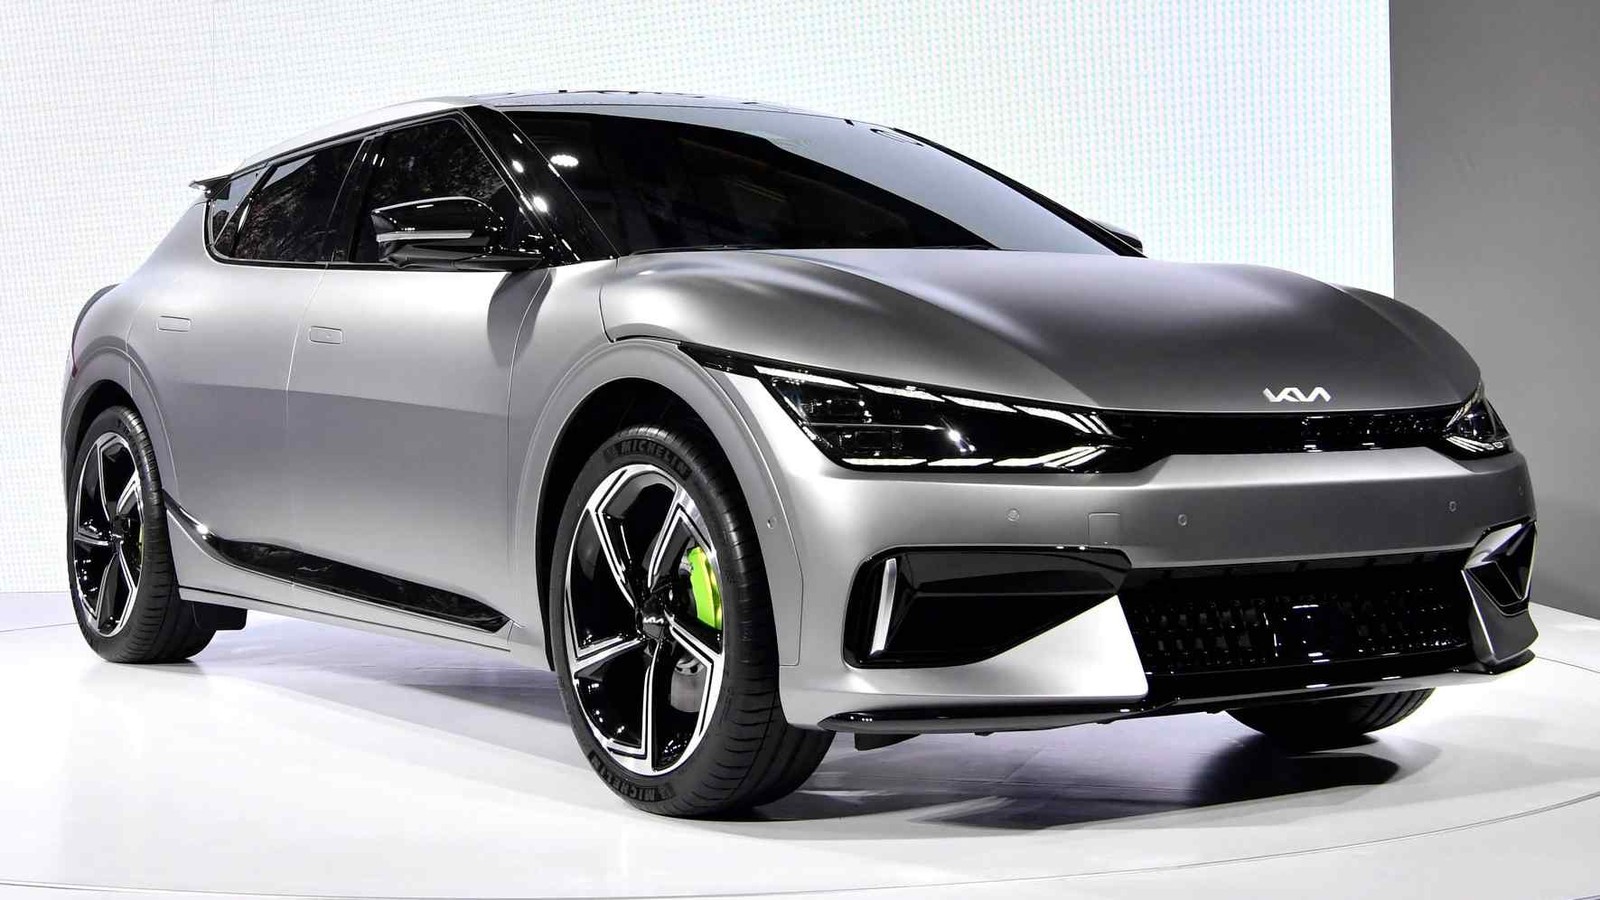 O EV6 é o primeiro modelo da Kia disponível apenas como veículo elétrico. Até aparecer no início de 2022, apoiado por um anúncio do Super Bowl, as opções elétricas da Kia, o Niro e o Soul, também eram vendidas como carros híbridos e movidos a gasolina. Preço de saída: cerca de R$ 235 mil